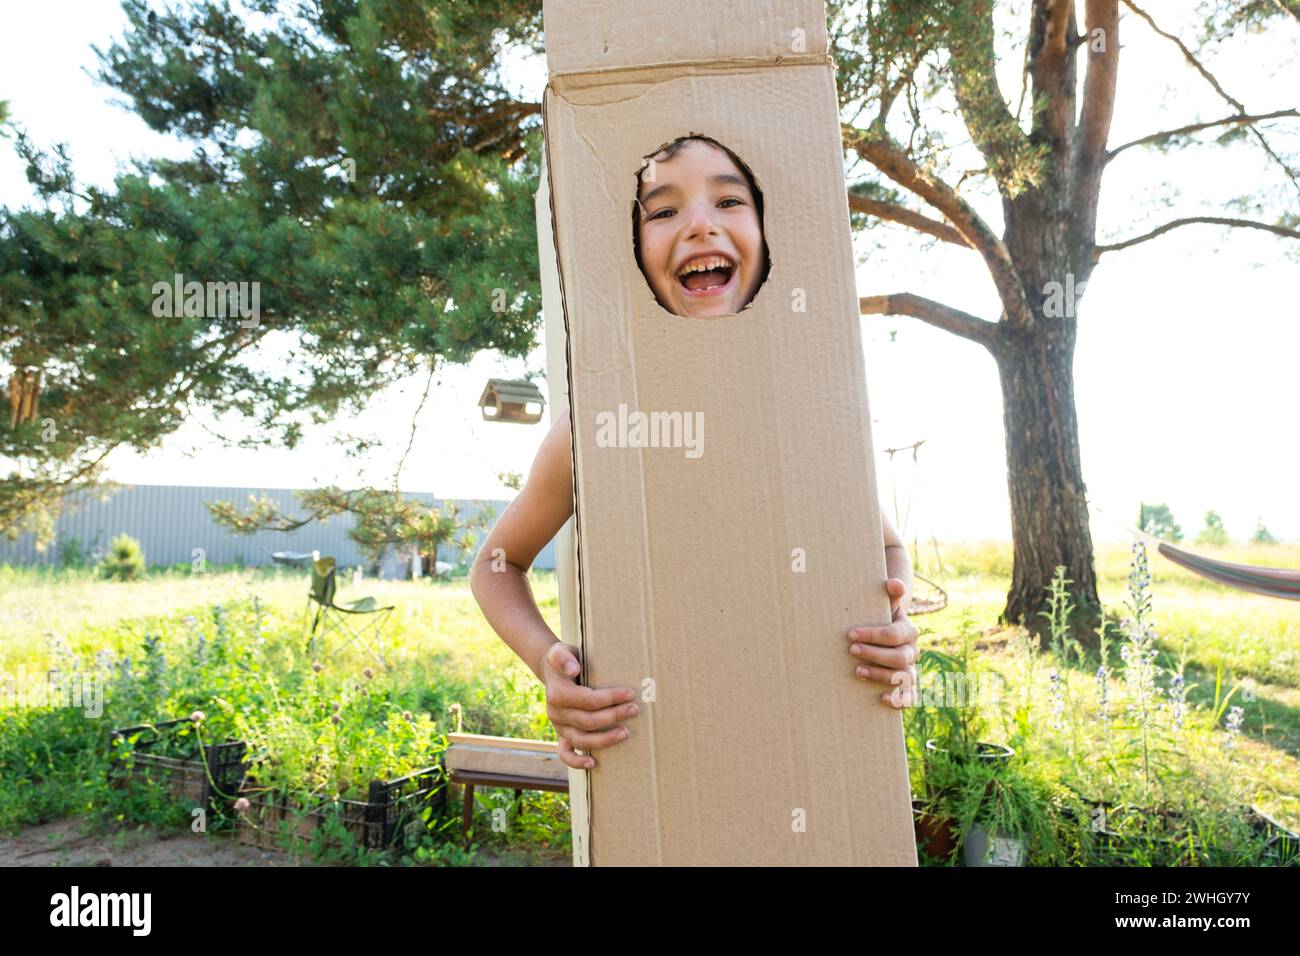 Das Kind tanzt und täuscht in einem Box Kostüm herum - runder Ausschnitt für Gesicht und Hände. Zieht in ein neues Haus, Kind Stockfoto